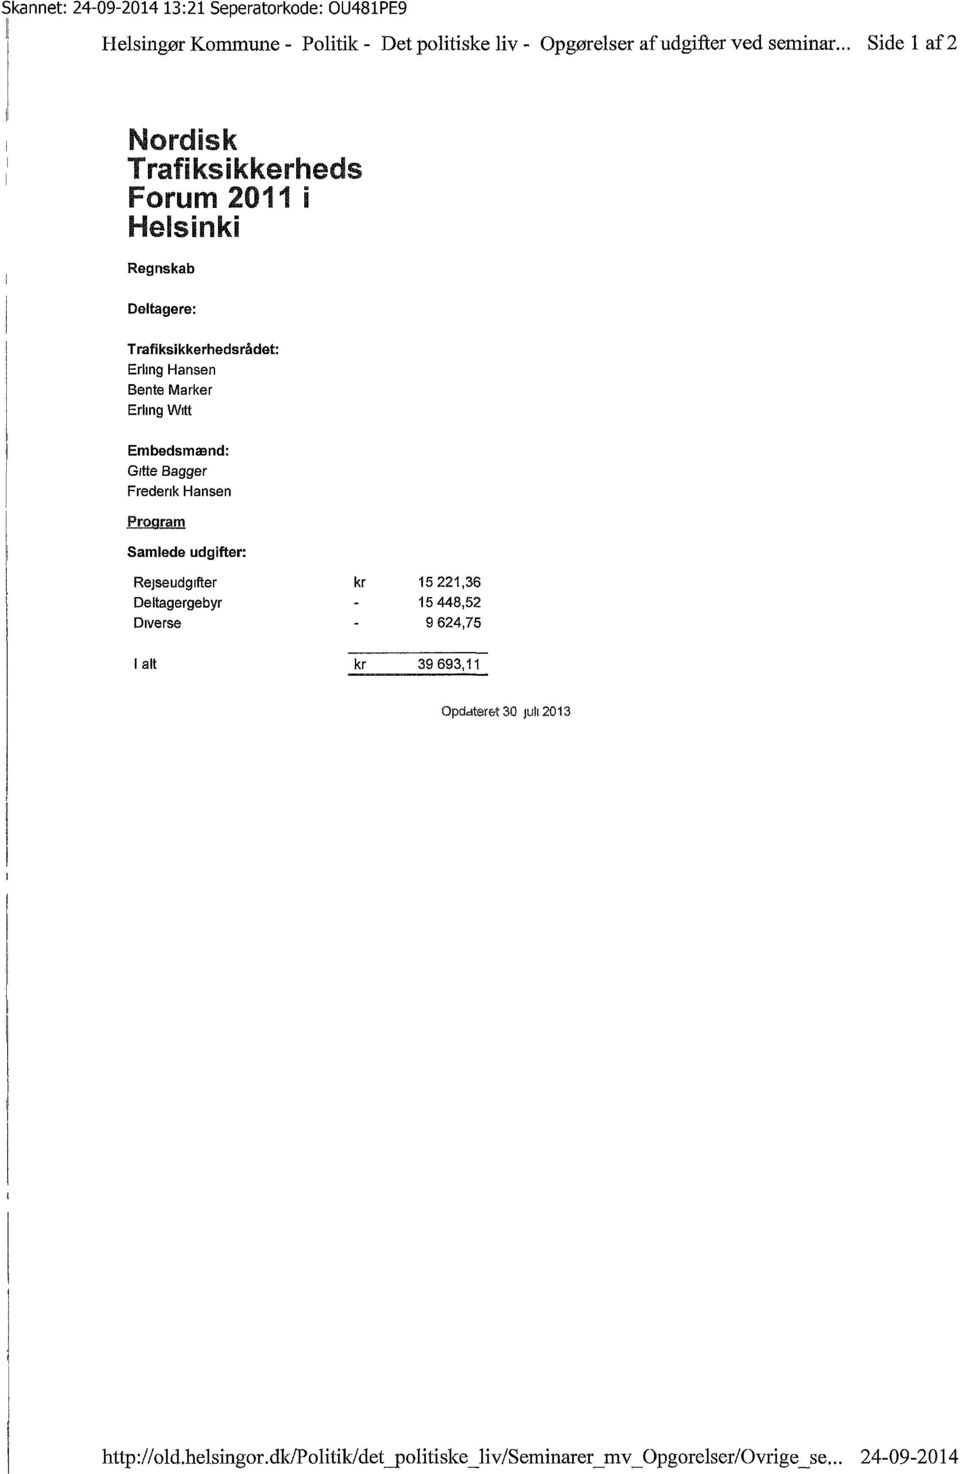 Erling Witt Embedsmænd: Gitte Bagger Frederik Hansen Program Samlede udgifter: Rejseudgifter kr 15 221,36 Deltagergebyr - 15